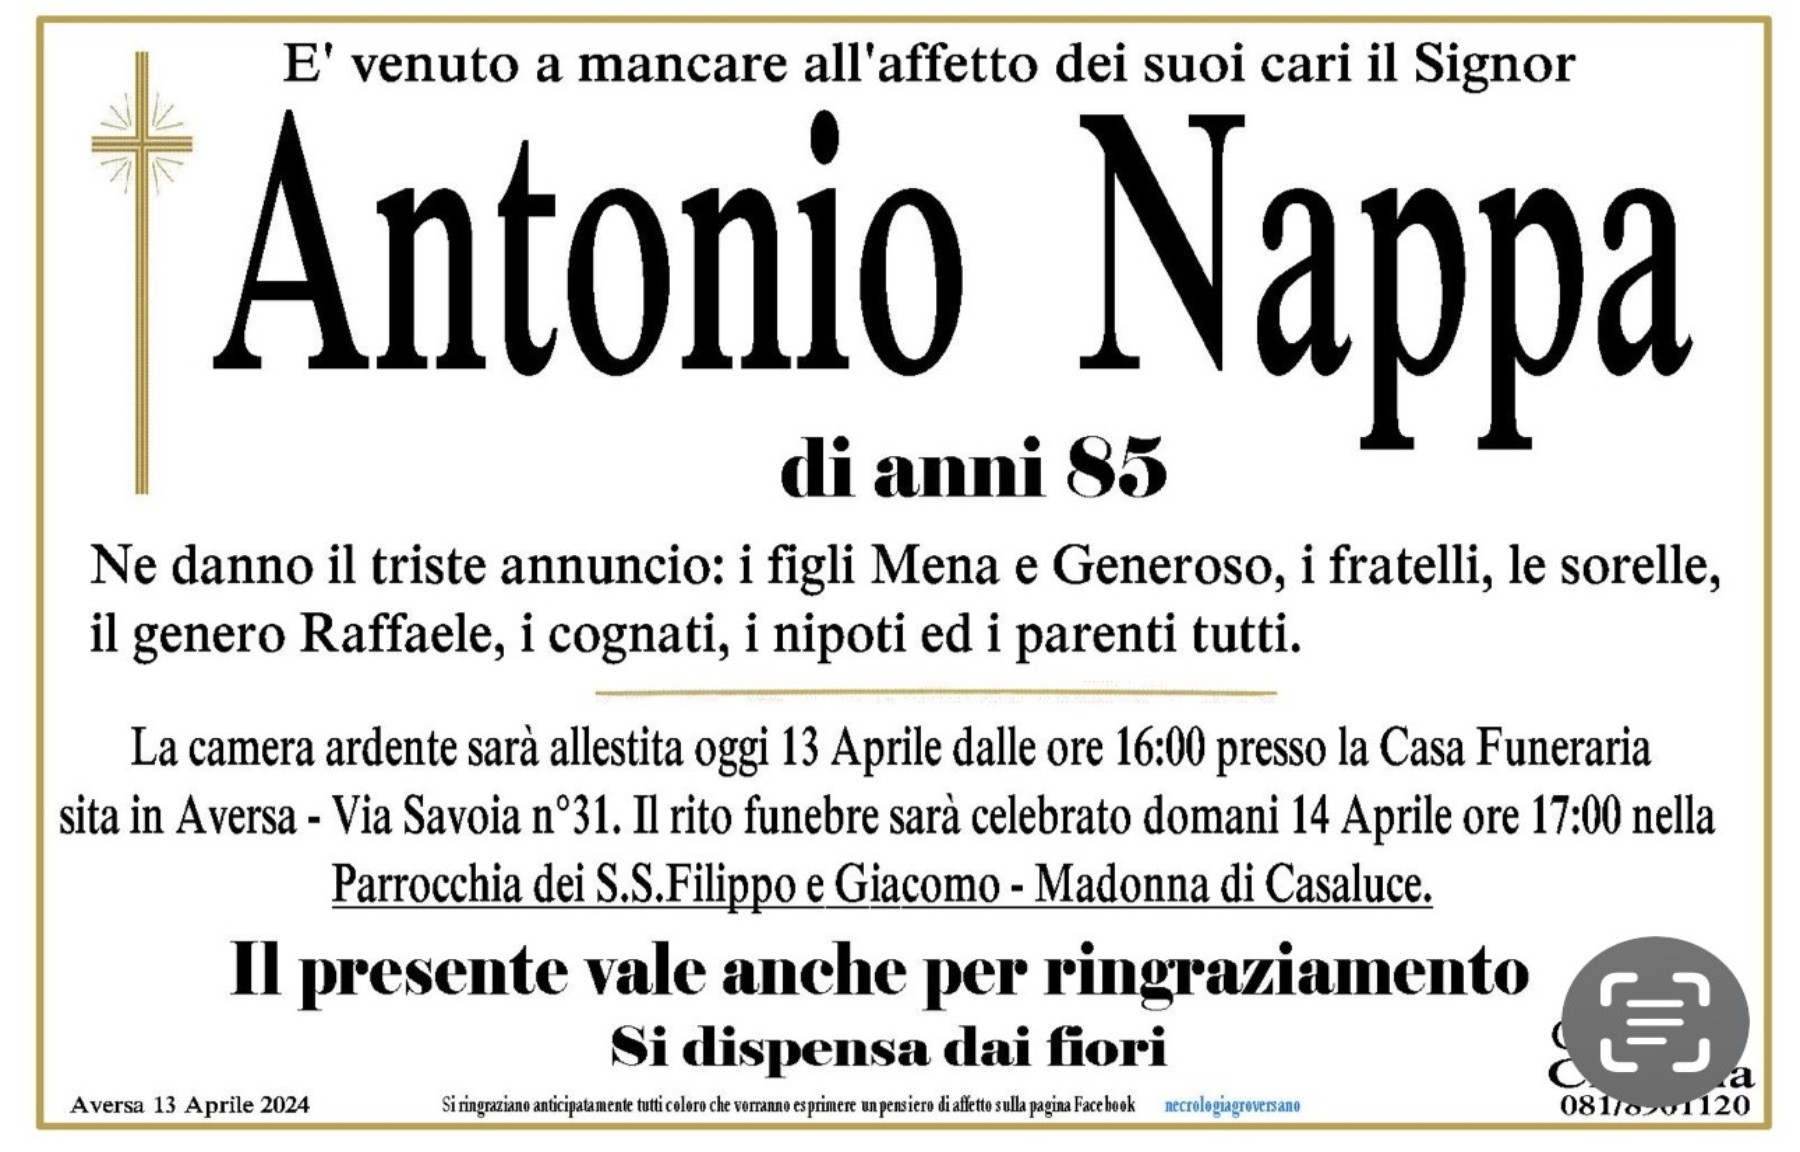 Antonio Nappa